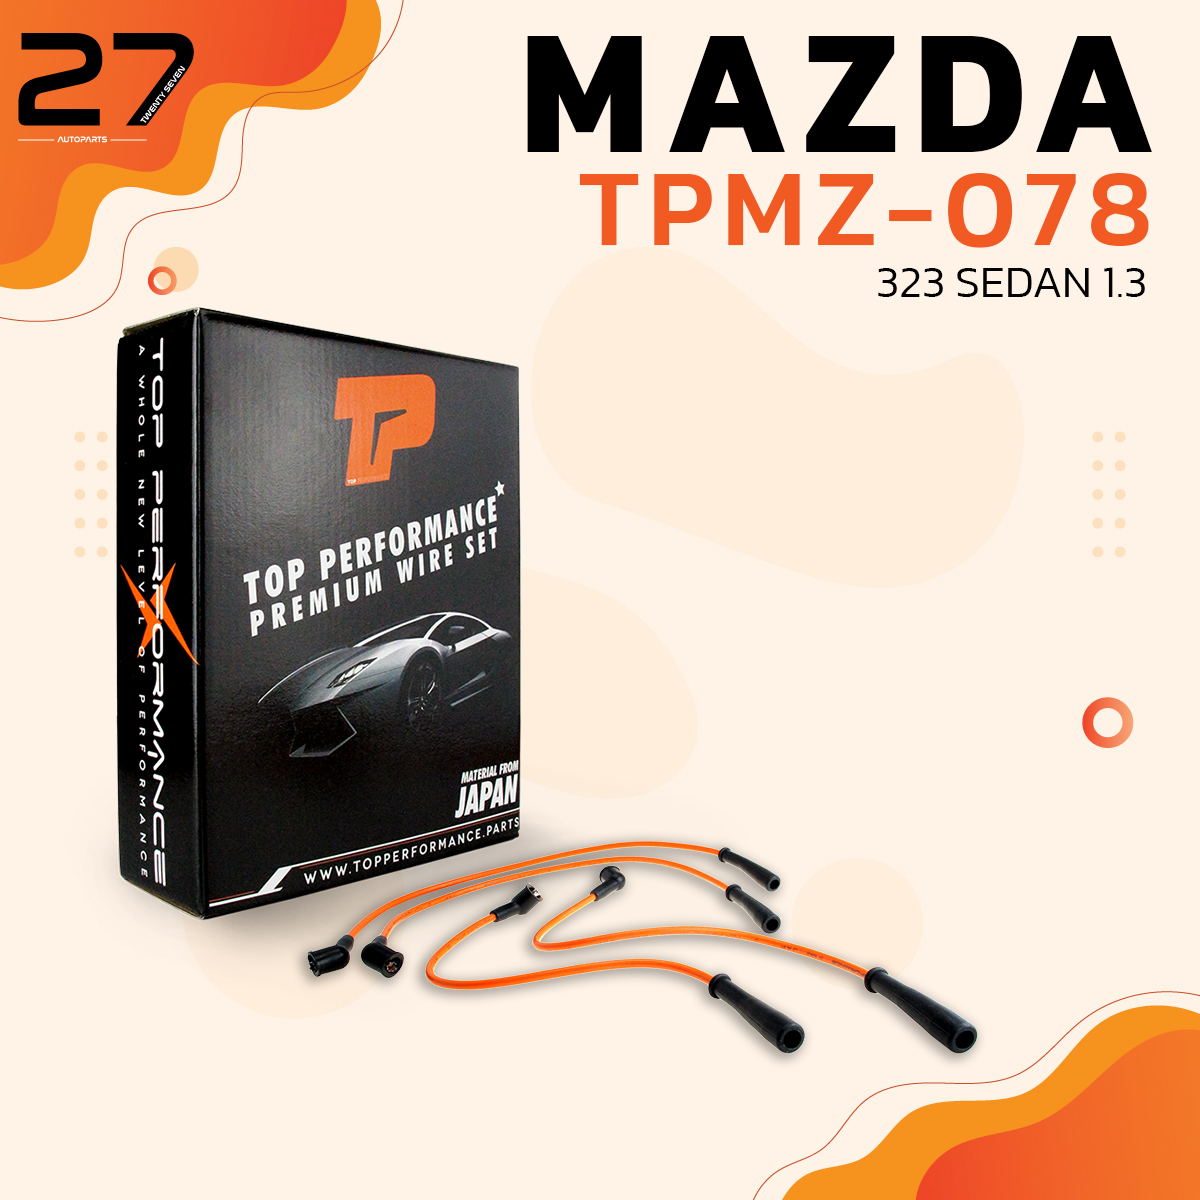 สายหัวเทียน MAZDA - 323 SEDAN 1.3 เครื่อง B3 ตรงรุ่น - รหัส TPMZ-078 - TOP PERFORMANCE JAPAN